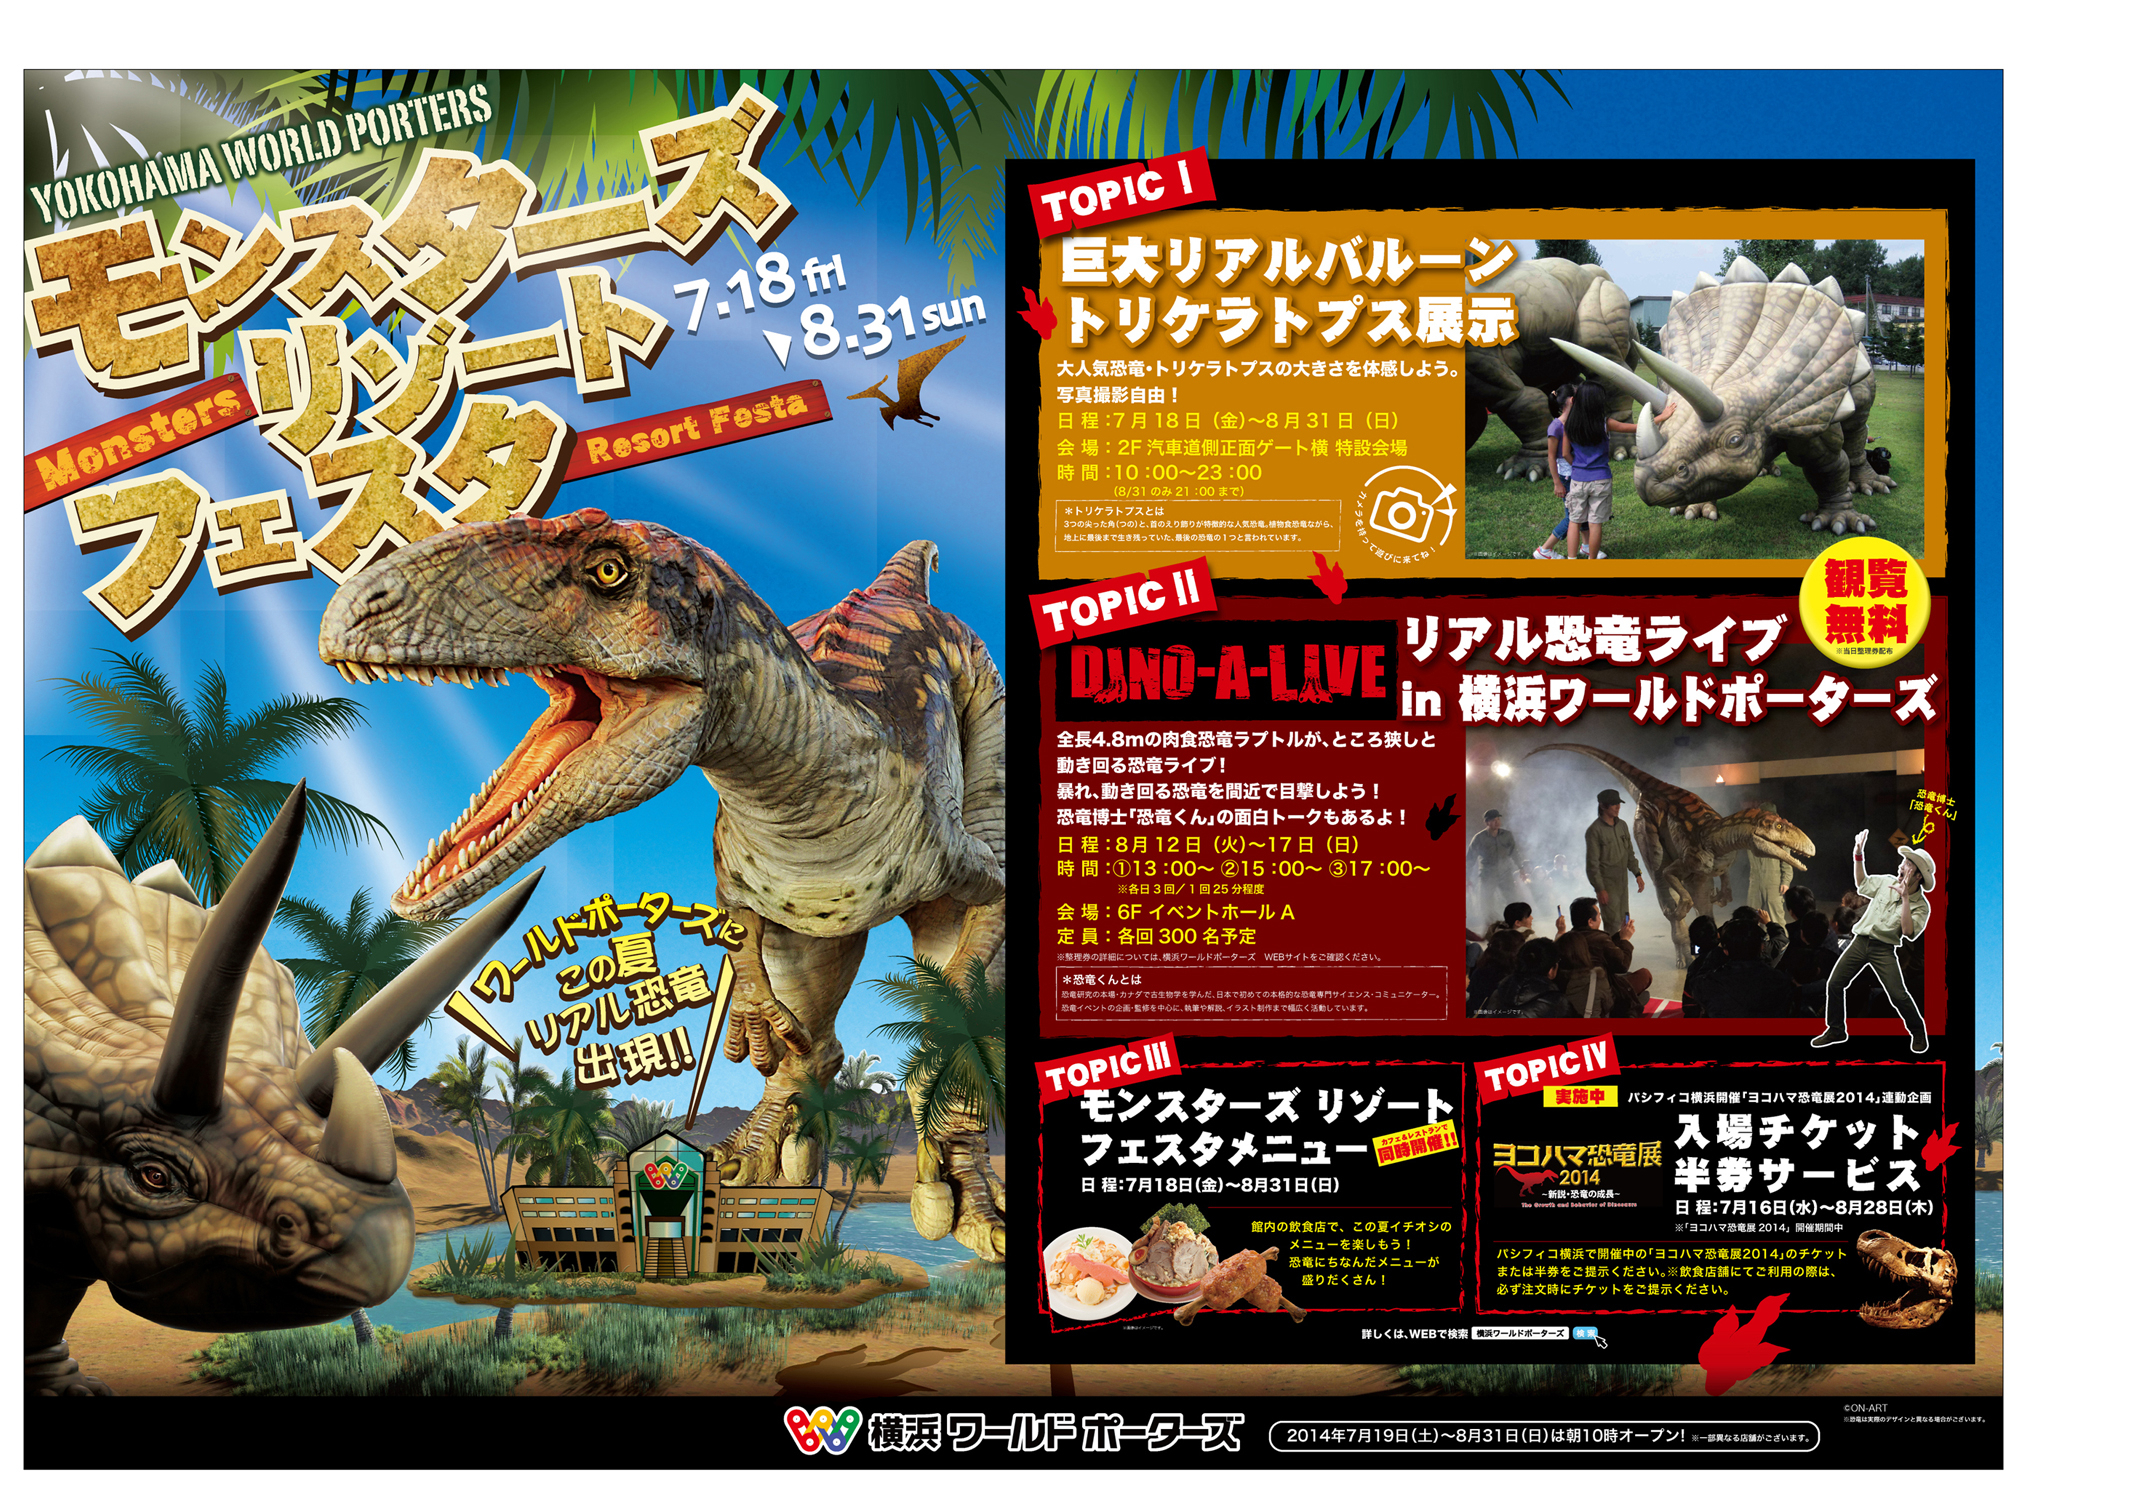 横浜ワールドポーターズでリアルな恐竜が暴れ回る 夏休みイベント モンスターズ リゾート フェスタ が7月18日より開催 株式会社横浜インポートマートのプレスリリース